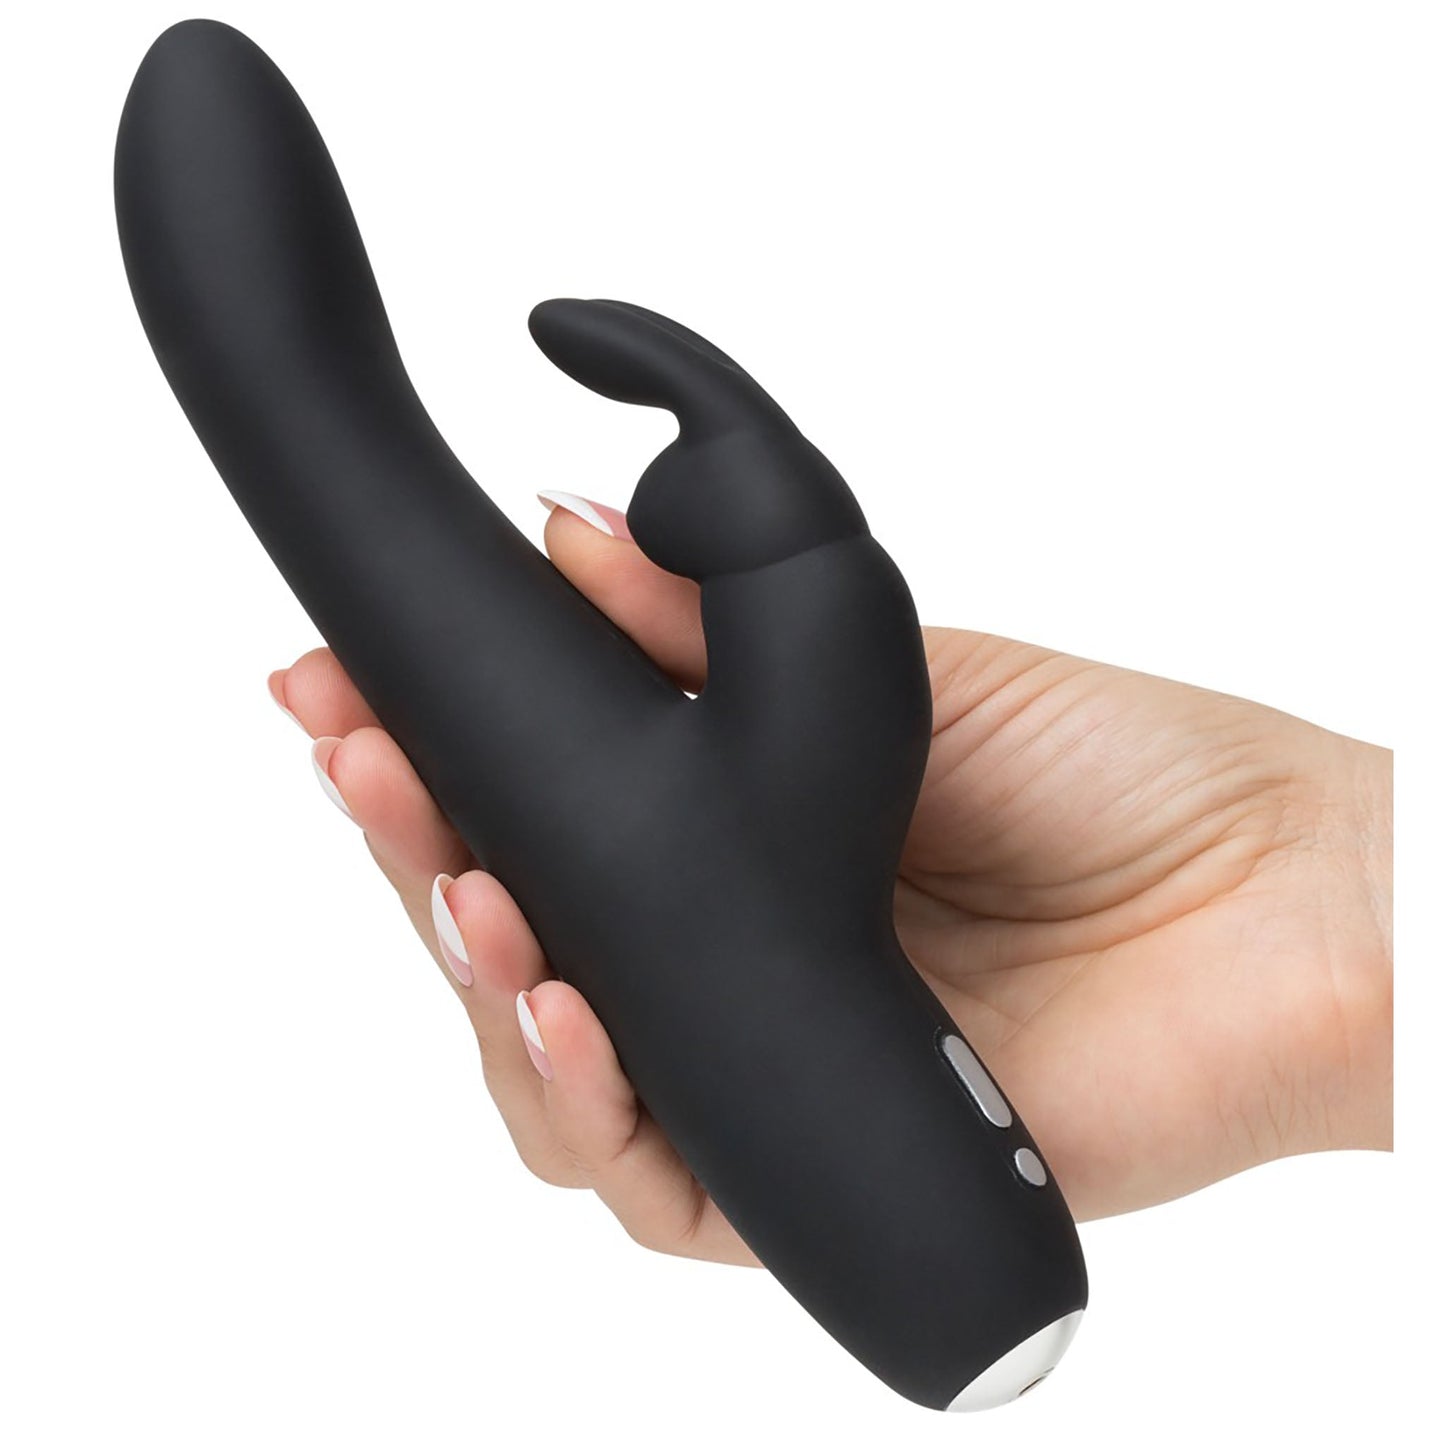 Greedy Girl Slimline Rabbit Vibrator G-Punkt Vibrator in schwarz, liegend auf einer Hand